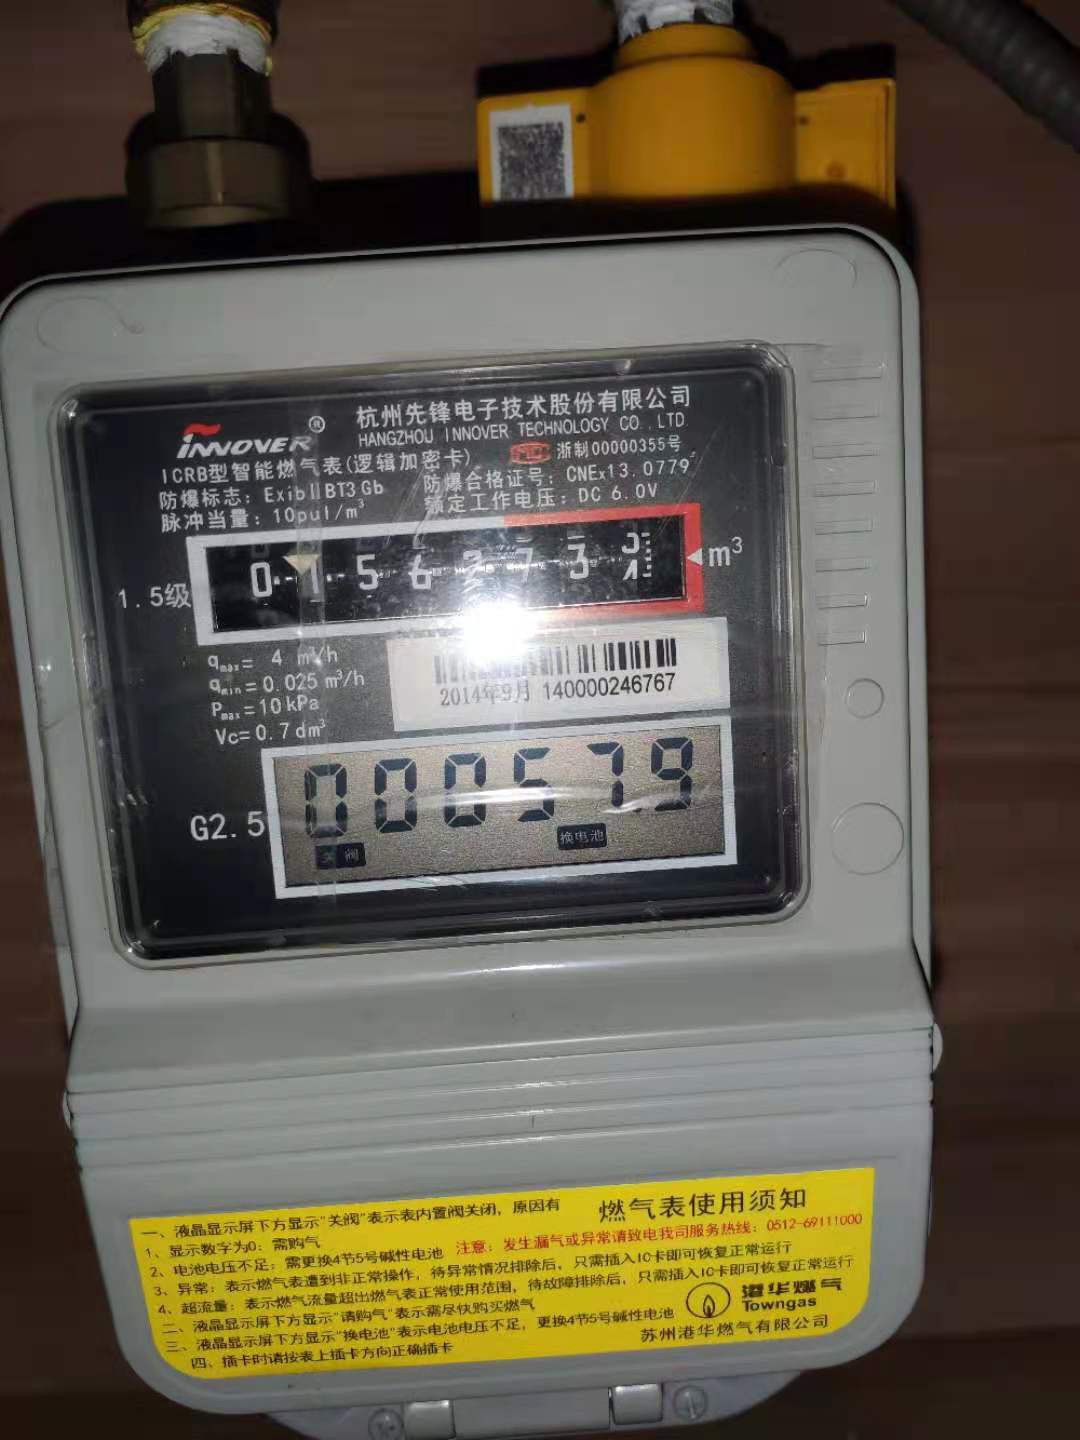 【记录】燃气表没电池了提示换电池